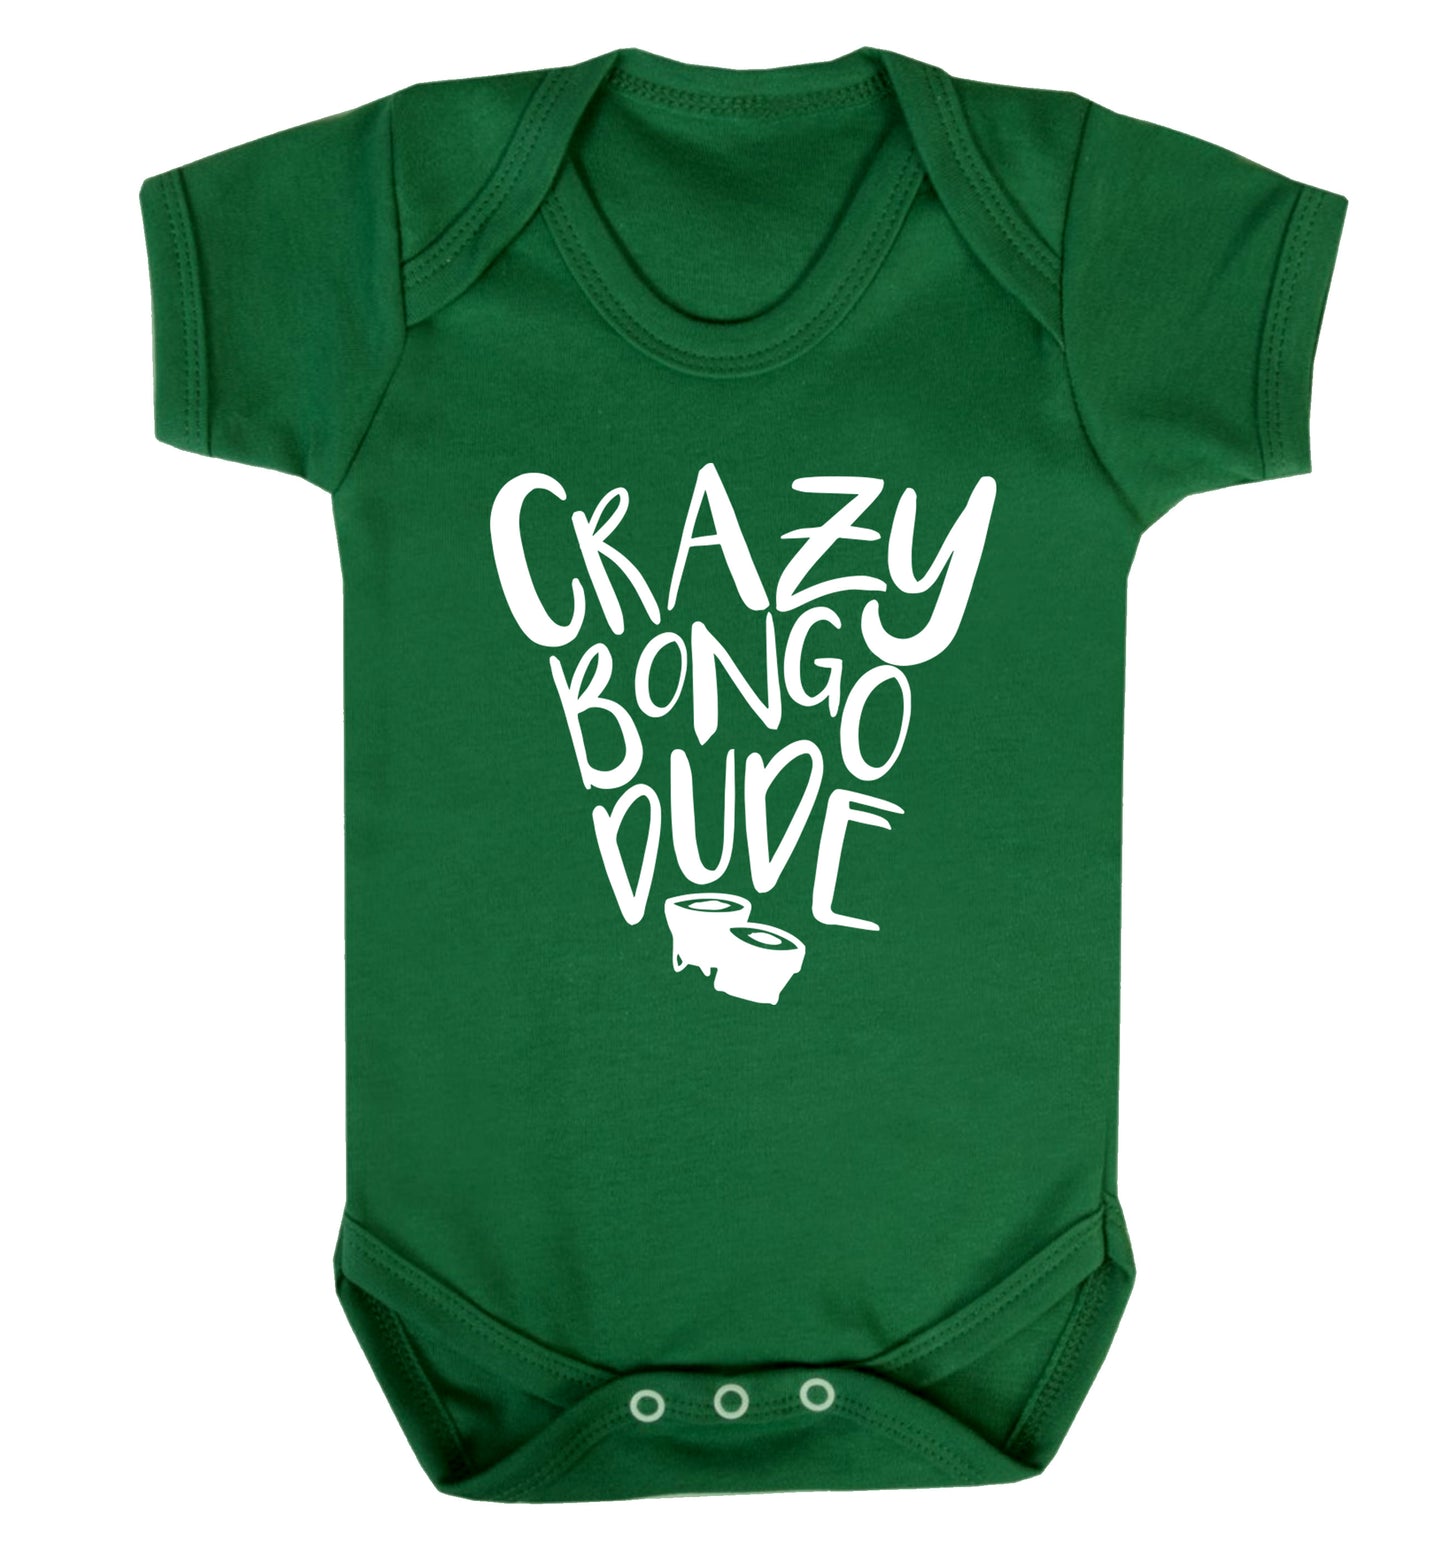 Crazy bongo dude Baby Vest green 18-24 months